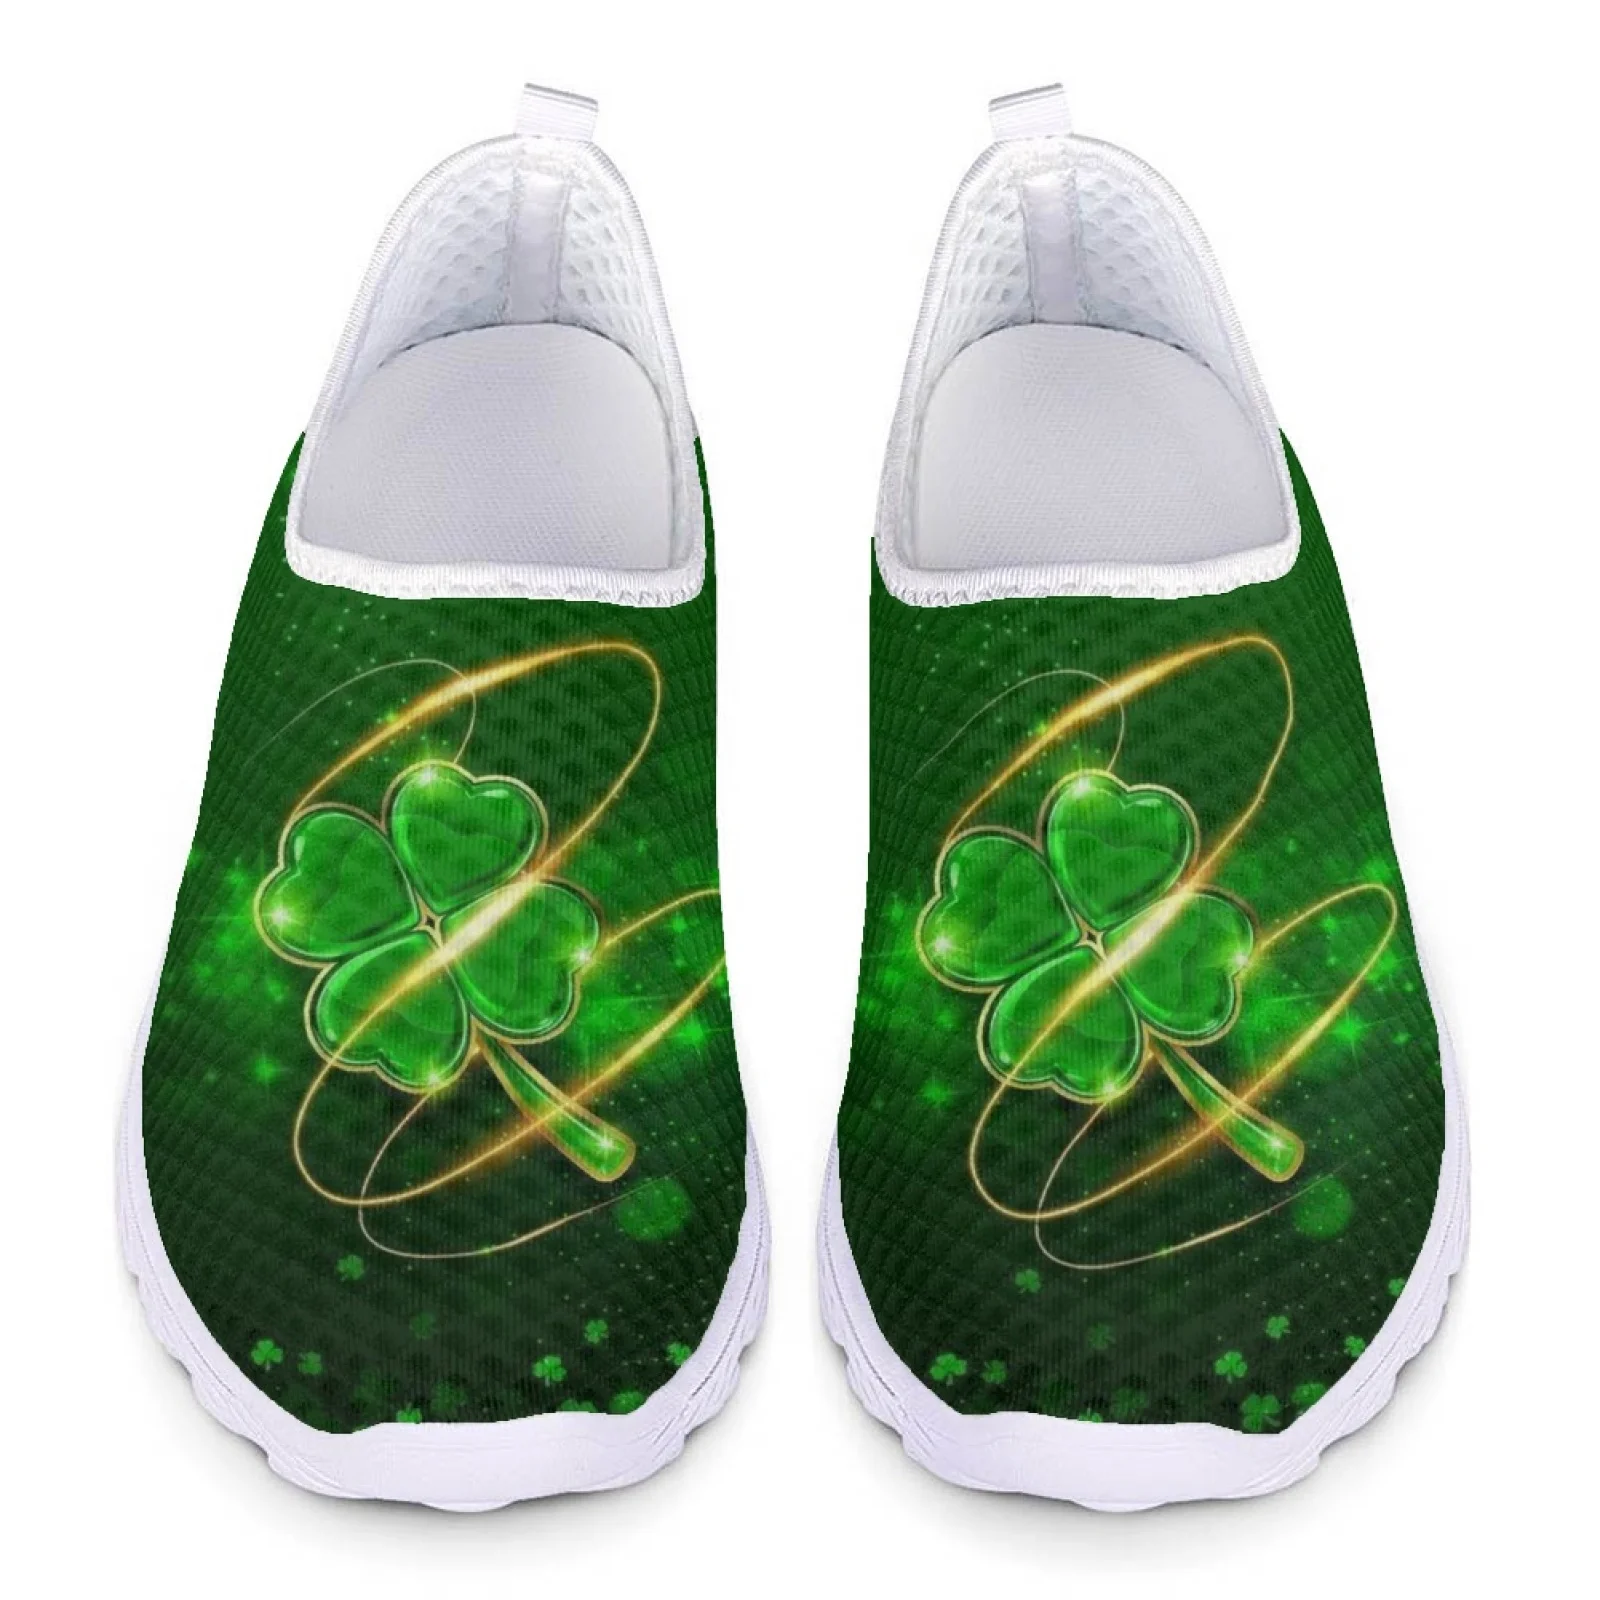 

INSTANTARTS новый дизайн зеленый Клевер удобная домашняя обувь популярная версия на День Святого Патрика летняя дышащая обувь